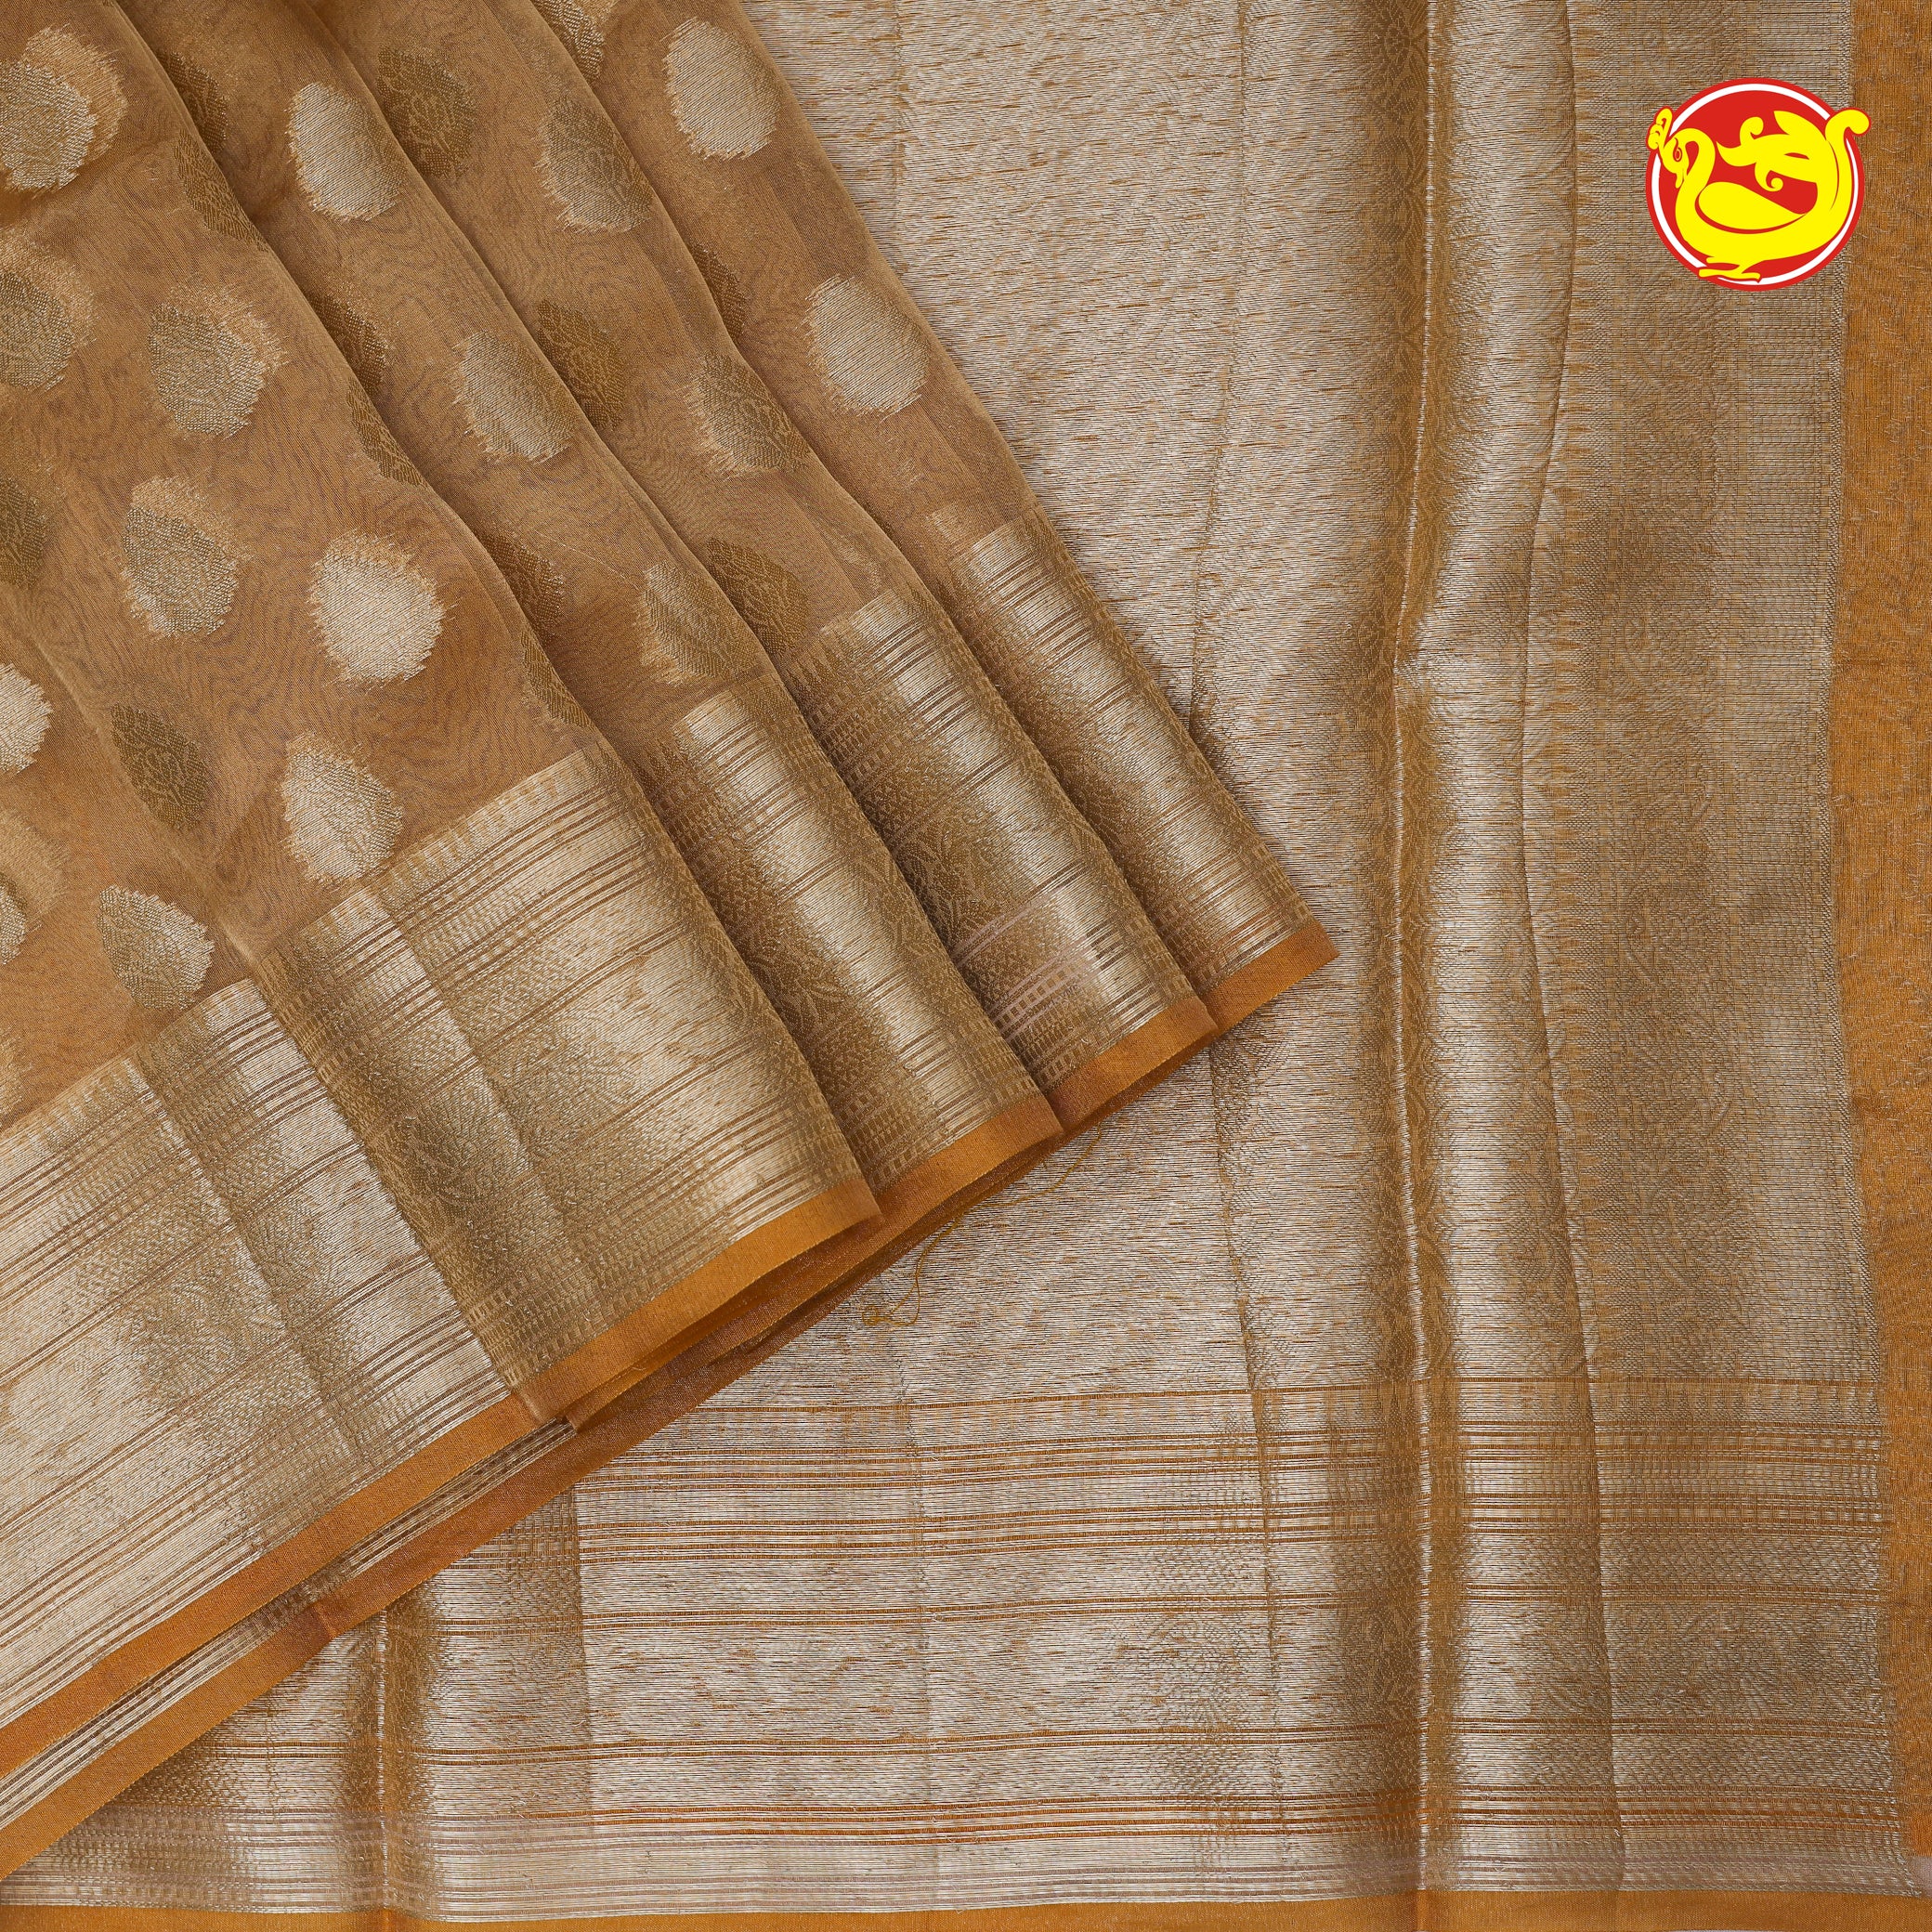 Mustard Semi-Tissue Saree With Unique Buttas, Traditional Zari Border & Pallu Of Intricate Designs